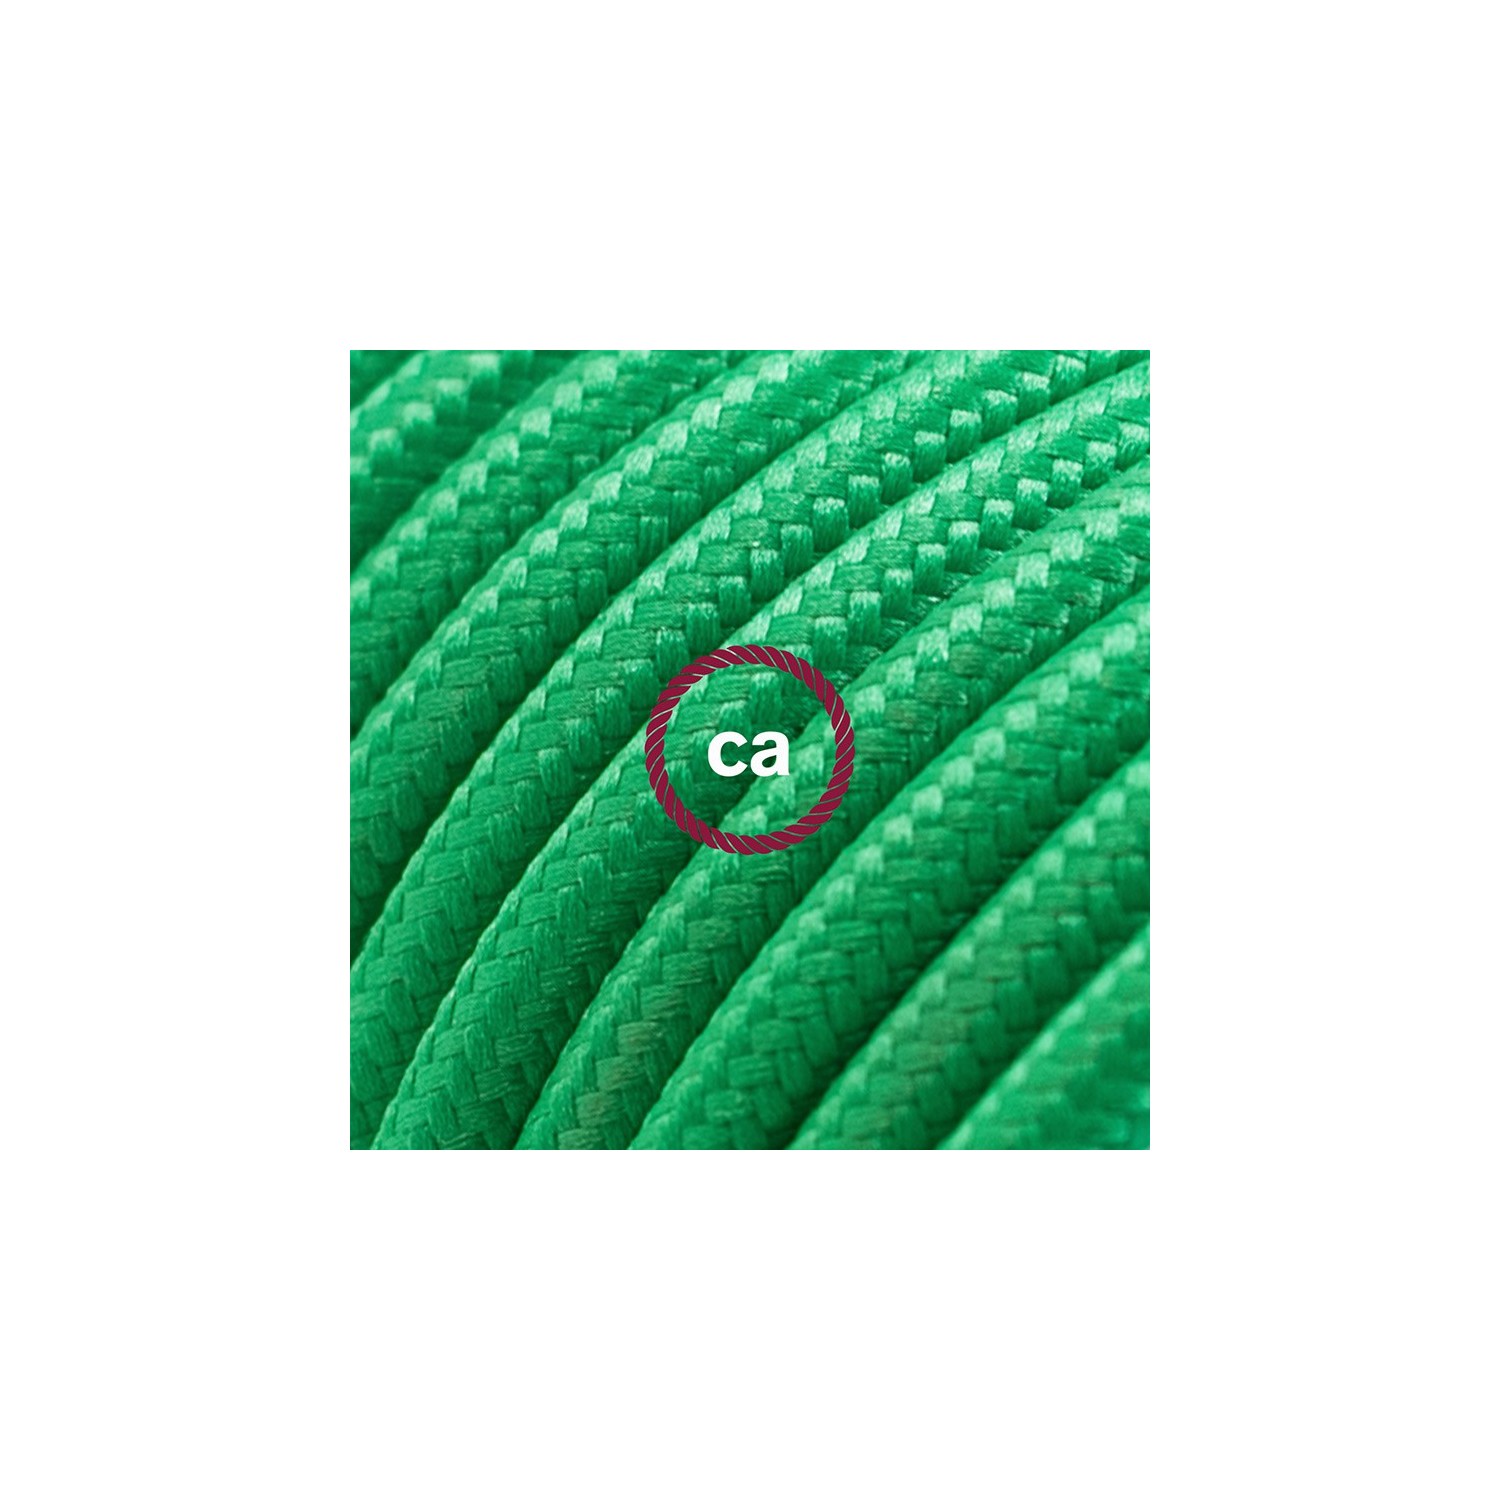 Produžni kabel za napajanje (2P 10A) Zeleni Rajon RM06 - Made in Italy